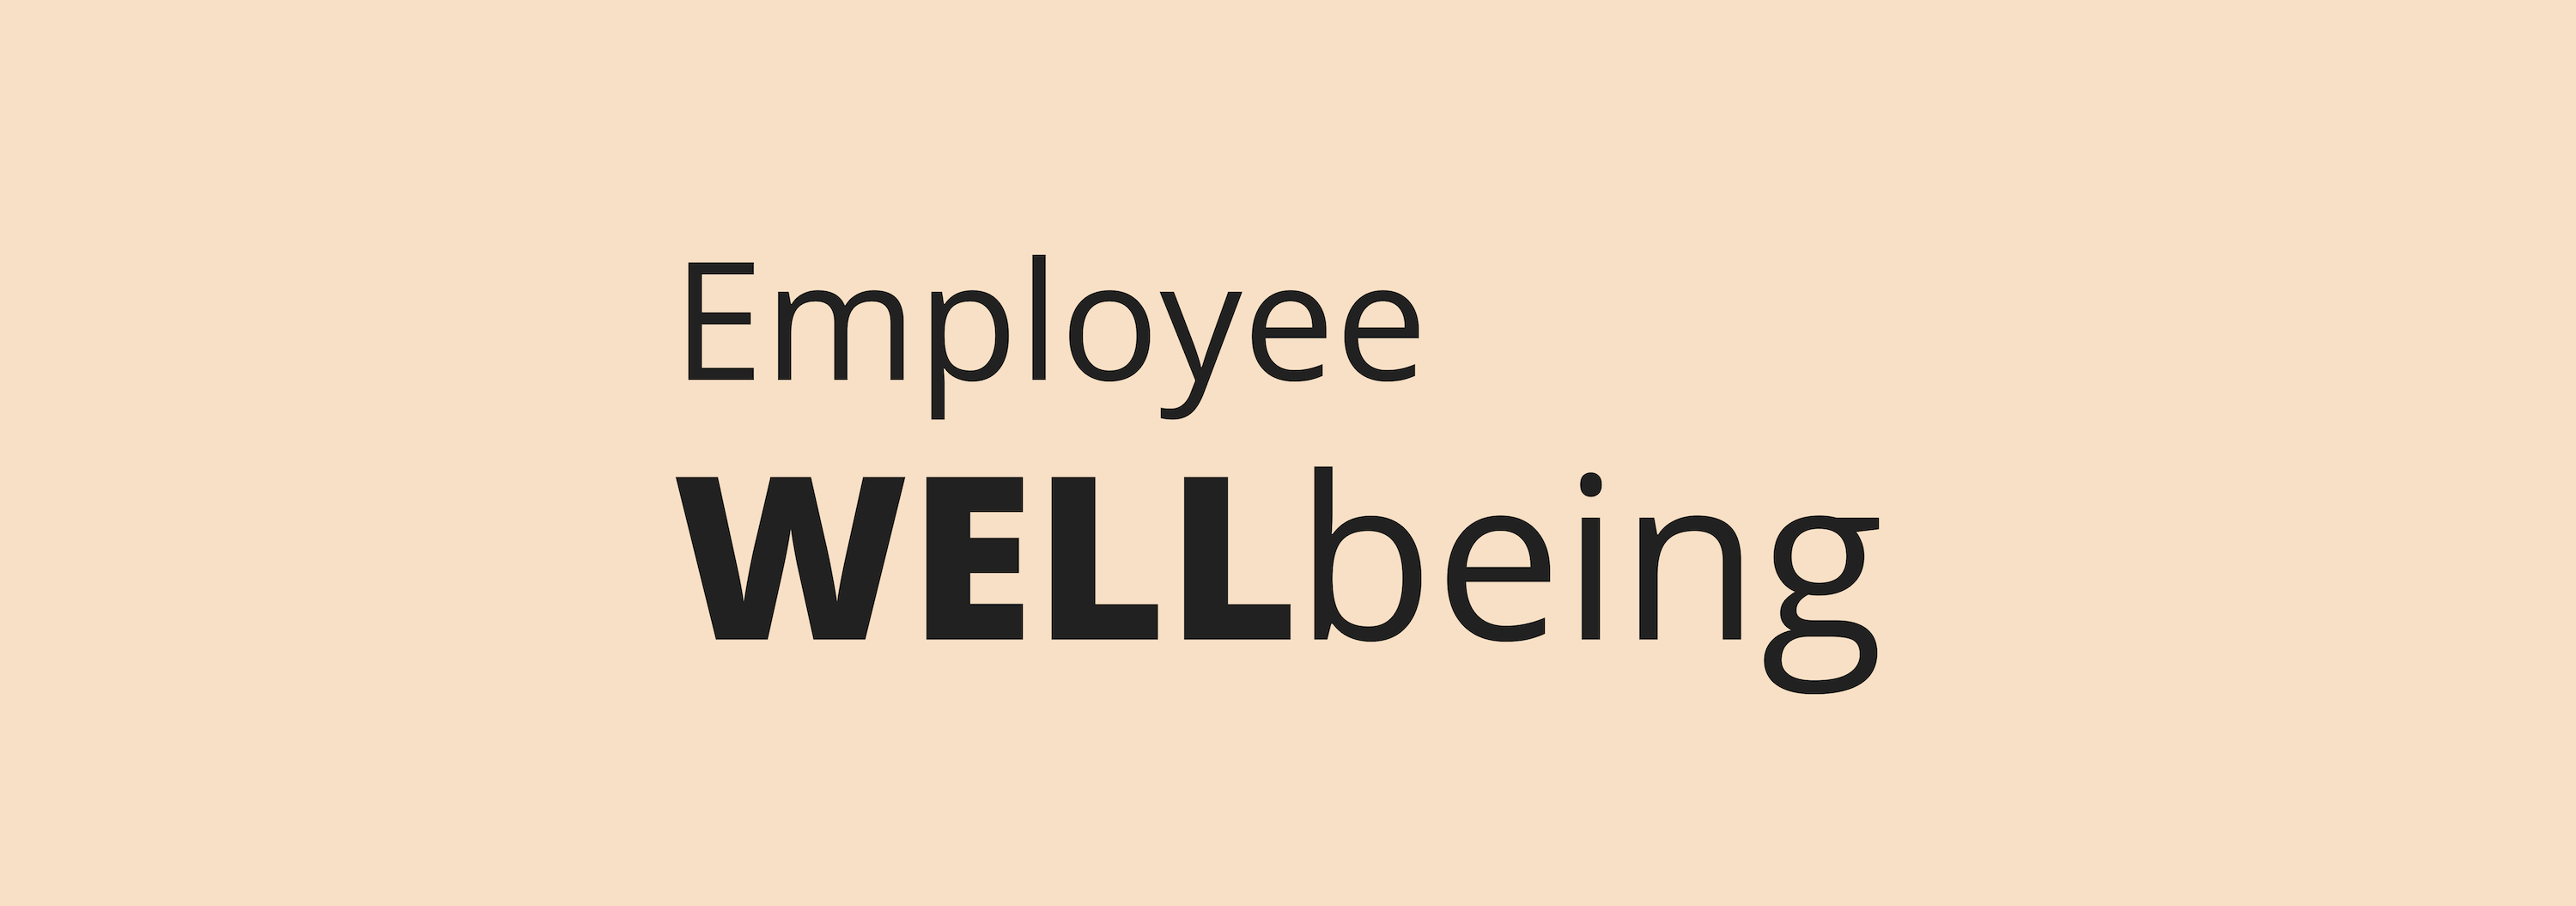 Top 5 HR Trends _Employee Wellbeing